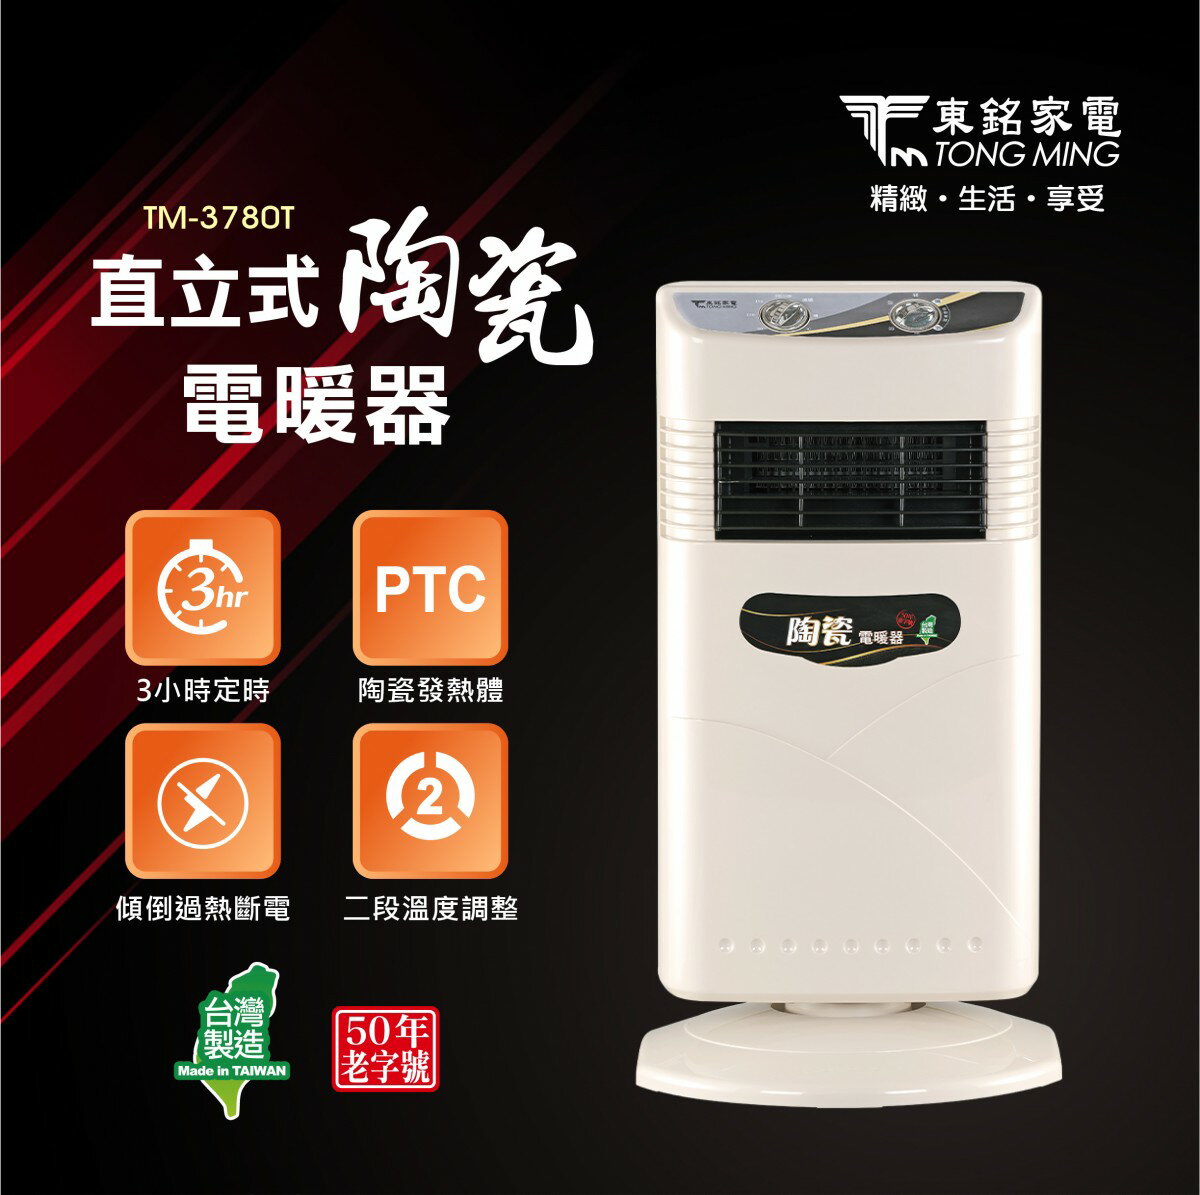 【東銘】 直立式陶瓷電暖器 TM-3780T 台灣製造